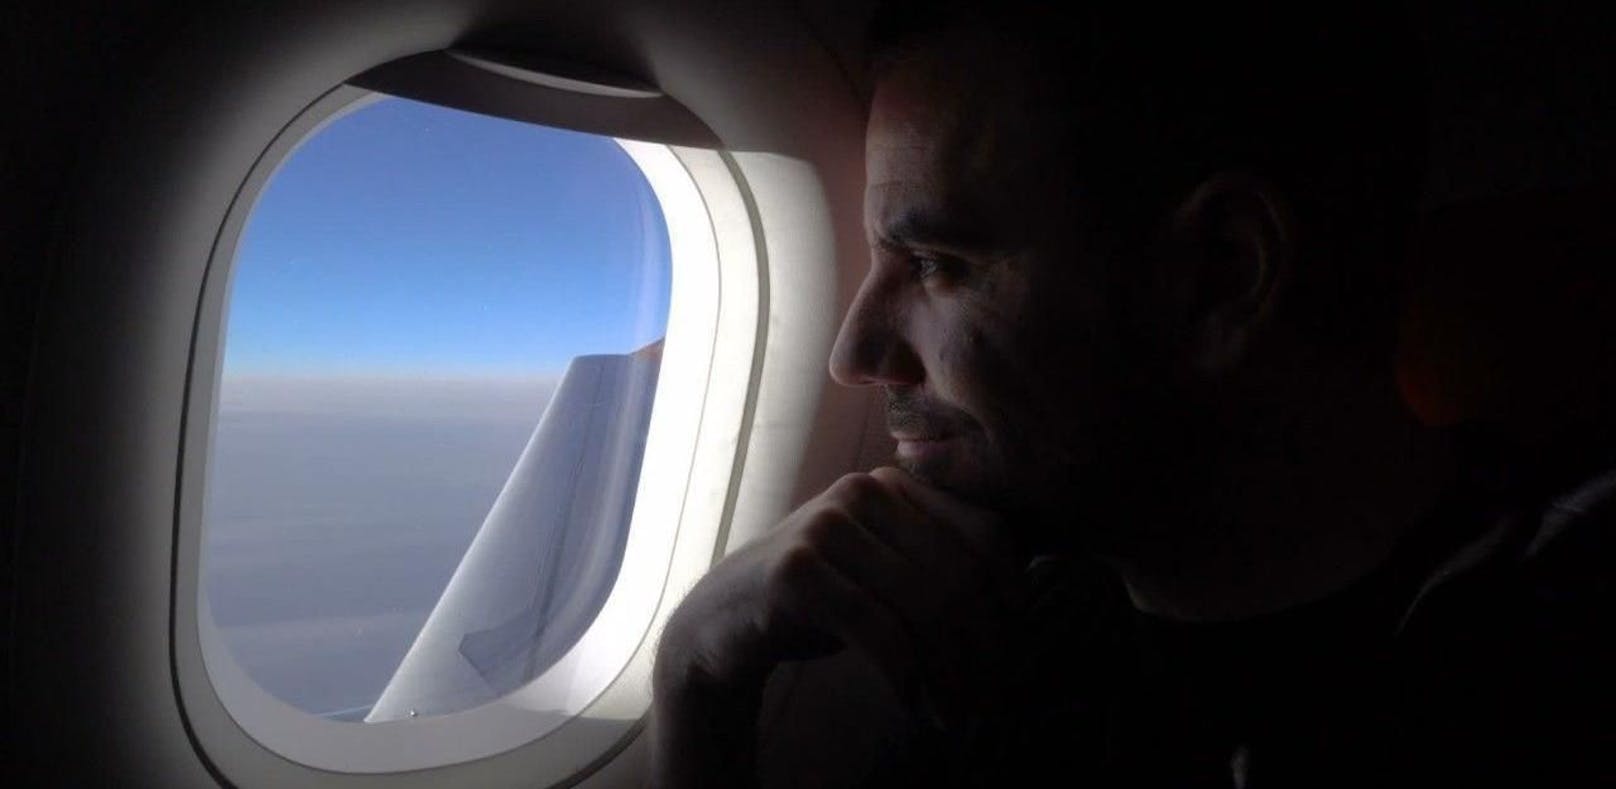 Darum dürfen Flugzeug-Fenster nicht eckig sein